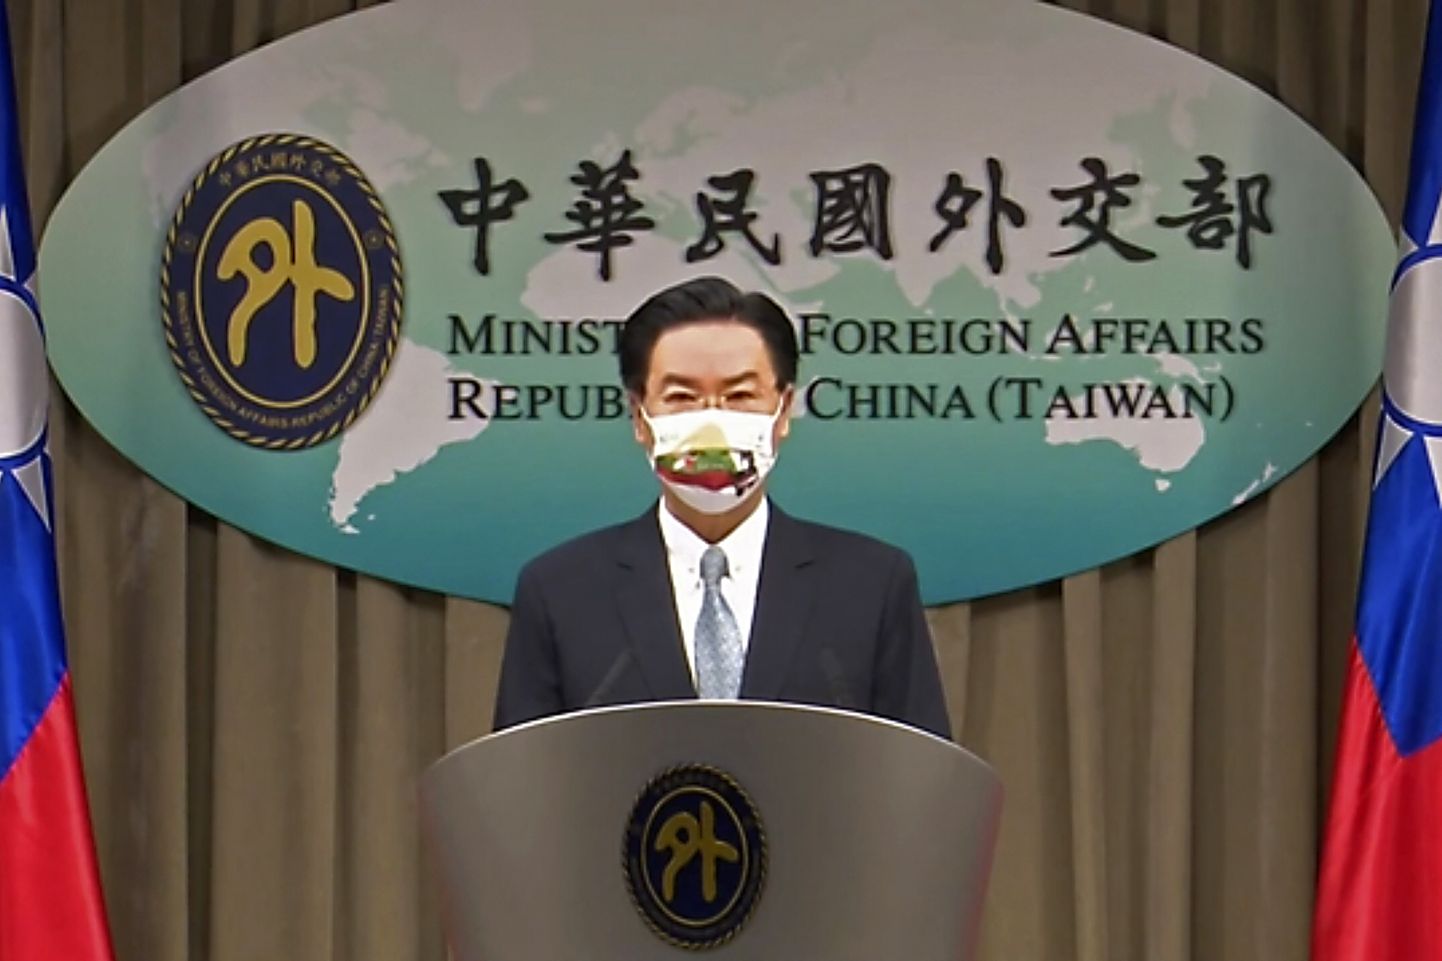 Taiwani välisminister Joseph Wu Taipeis pressikonverentsil. Kuvatõmmis tehtud 20. juuli 2021.